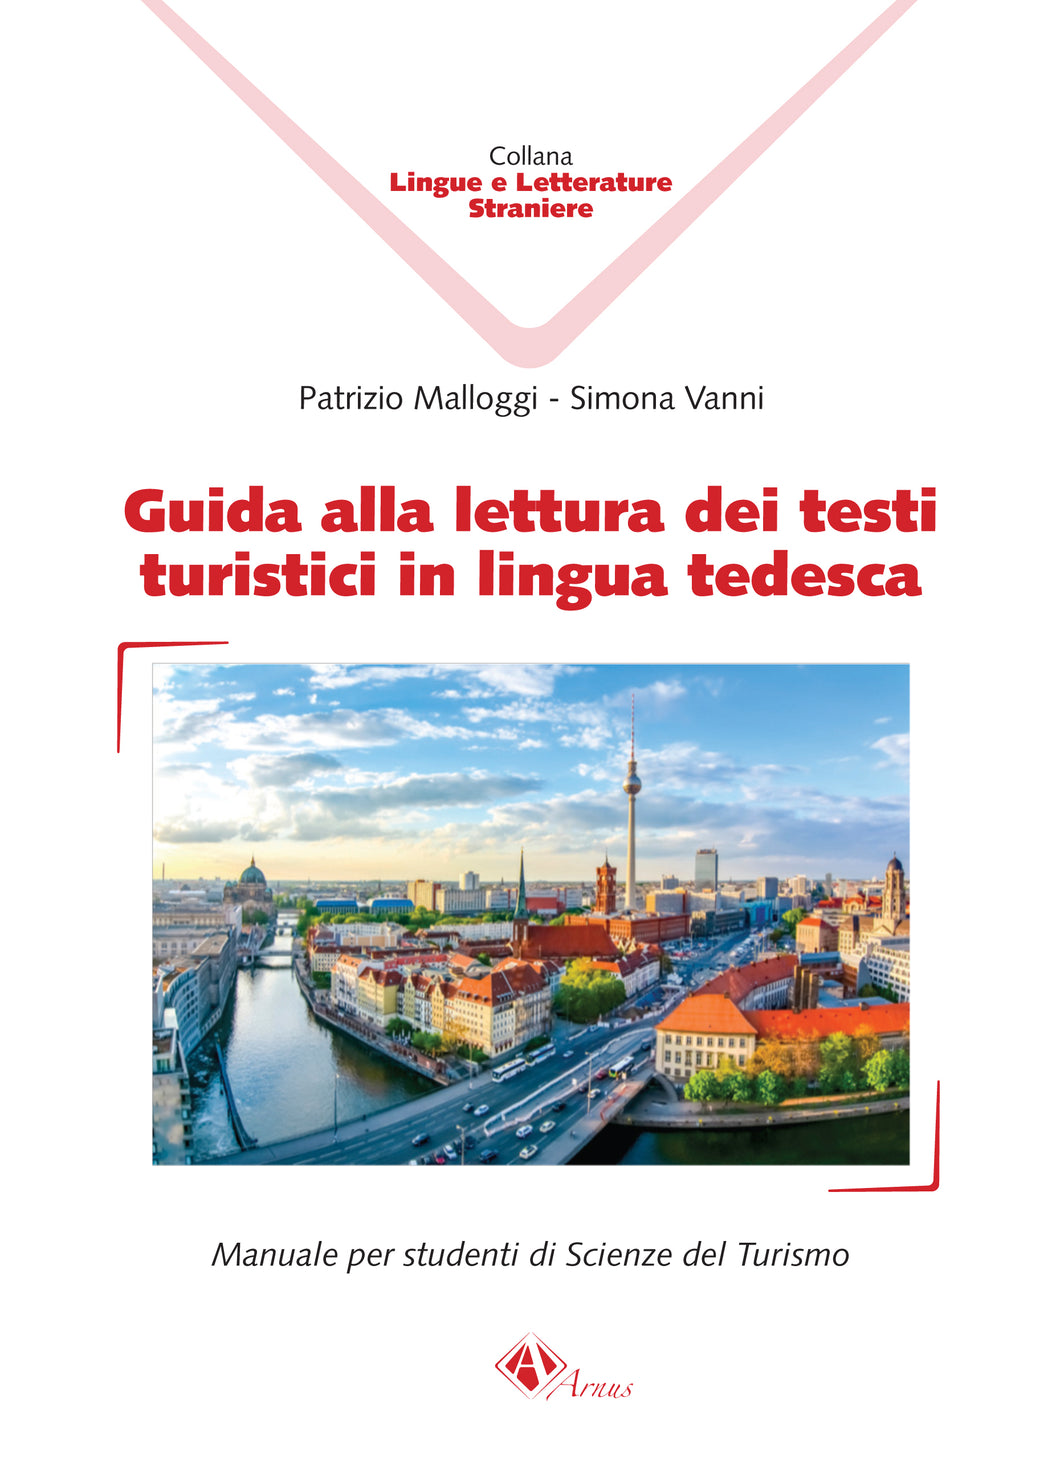 Guida alla lettura dei testi turistici in lingua tedesca